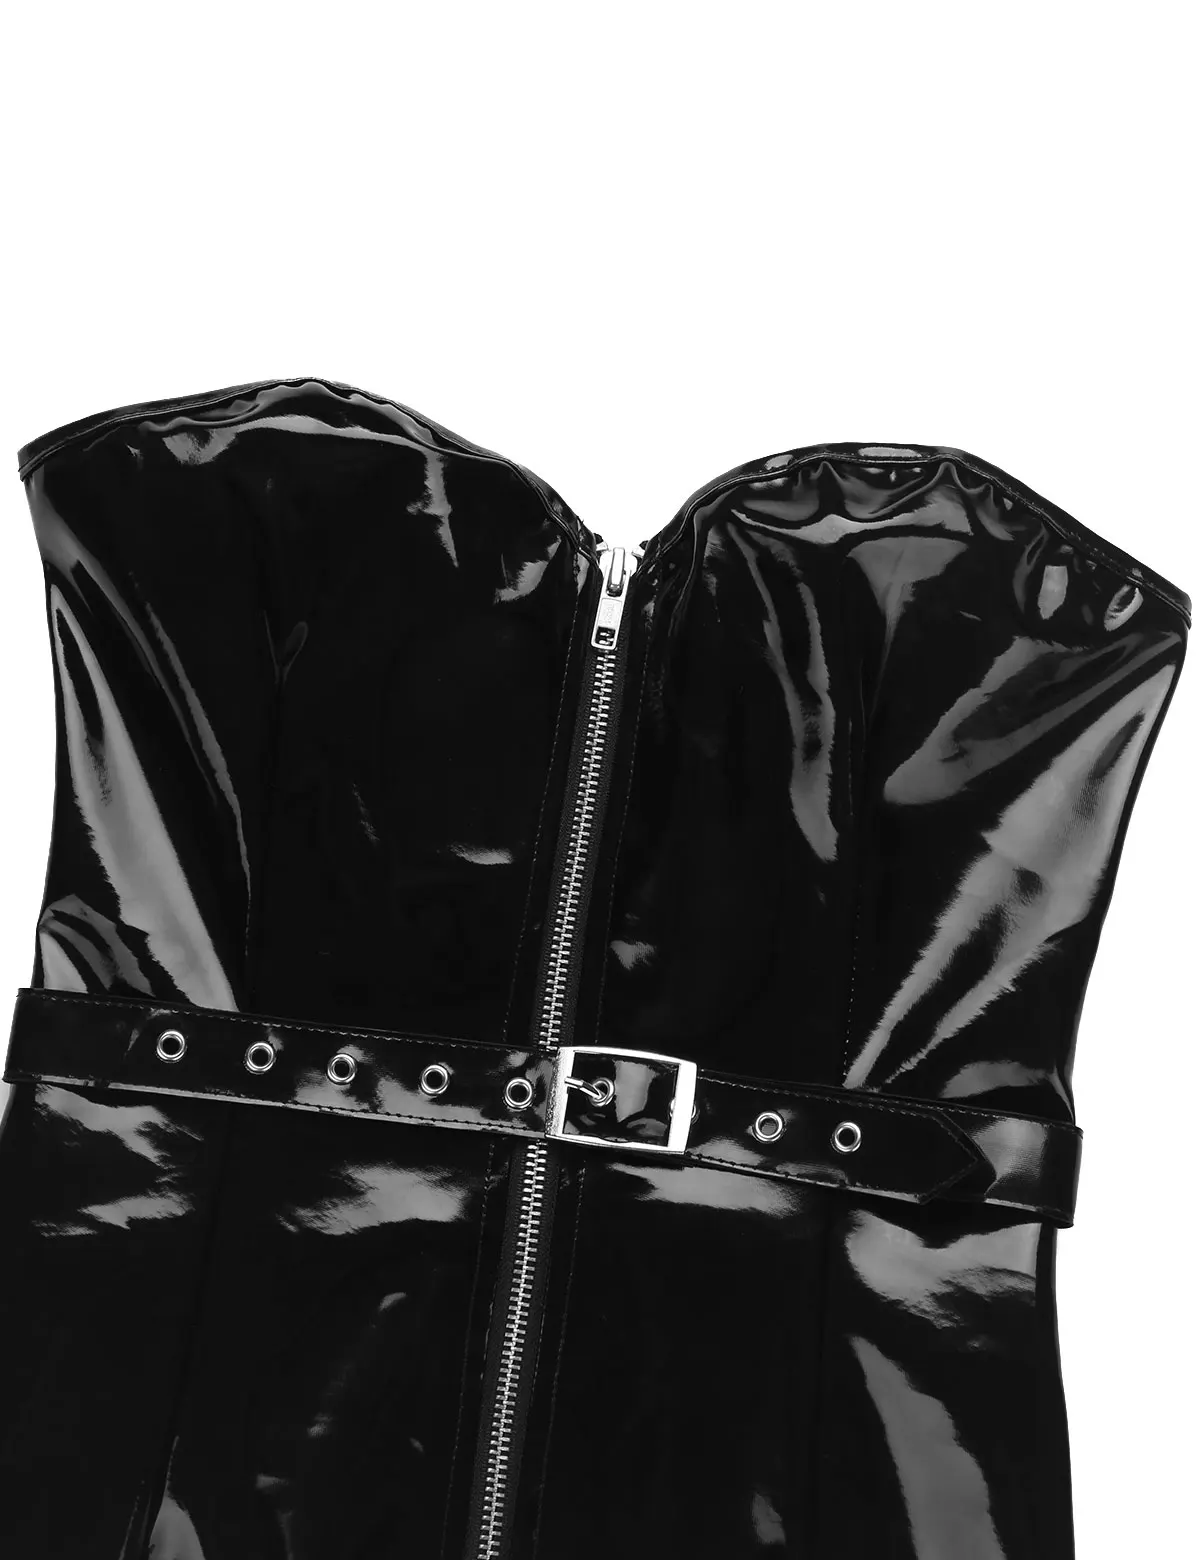 Сексуальное женское платье из кожи ПВХ без бретелек с молнией спереди, облегающее Мини платье для вечеринки, латексное платье, Клубная одежда